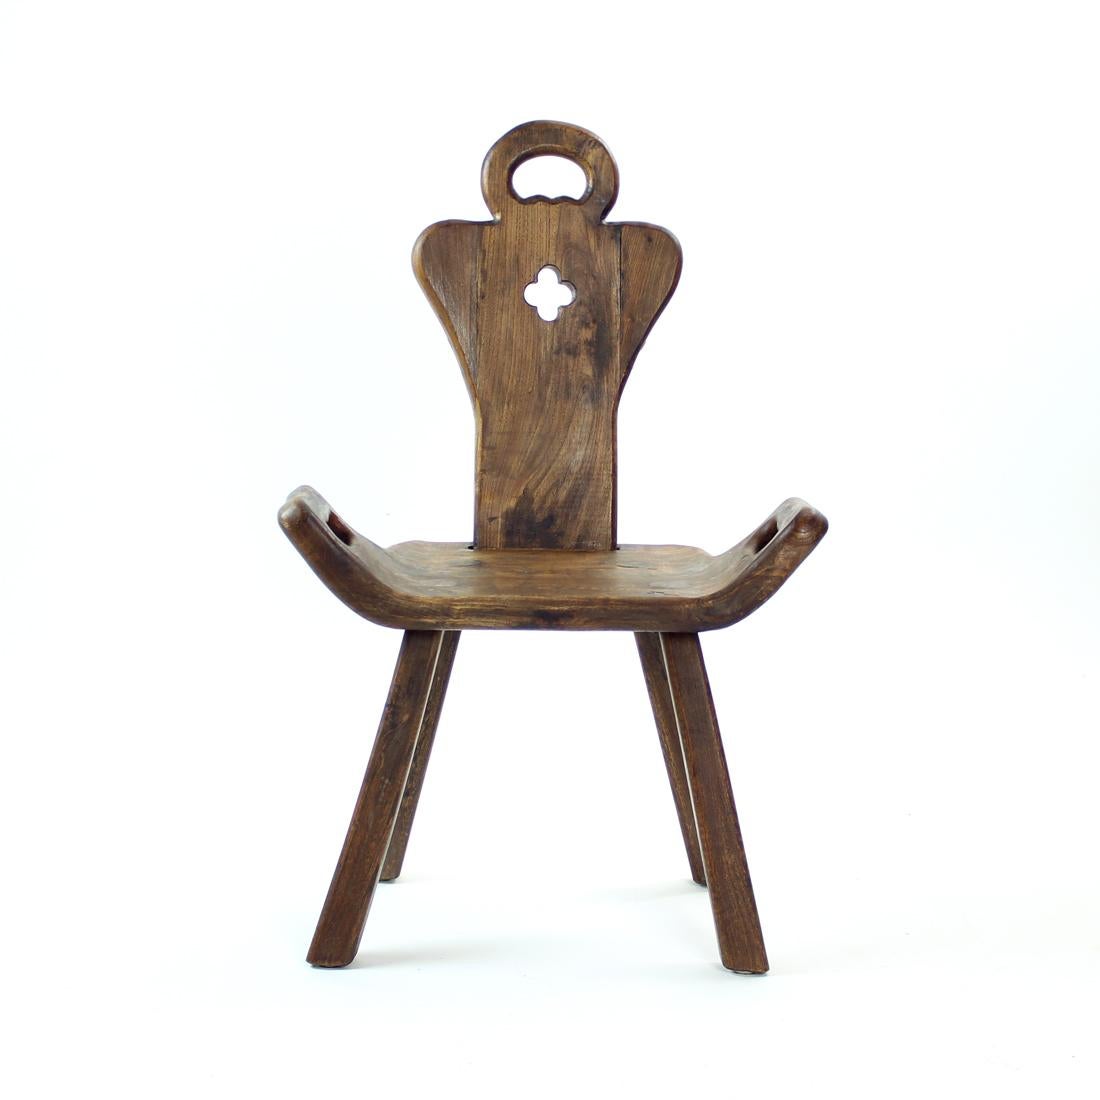 Belle chaise vintage fabriquée au début du 20e siècle en Hollande. Nous en avons deux disponibles, ils sont identiques mais chacun est légèrement différent car ils sont faits à la main. Excellent design pour une chaise occasionnelle qui est plus